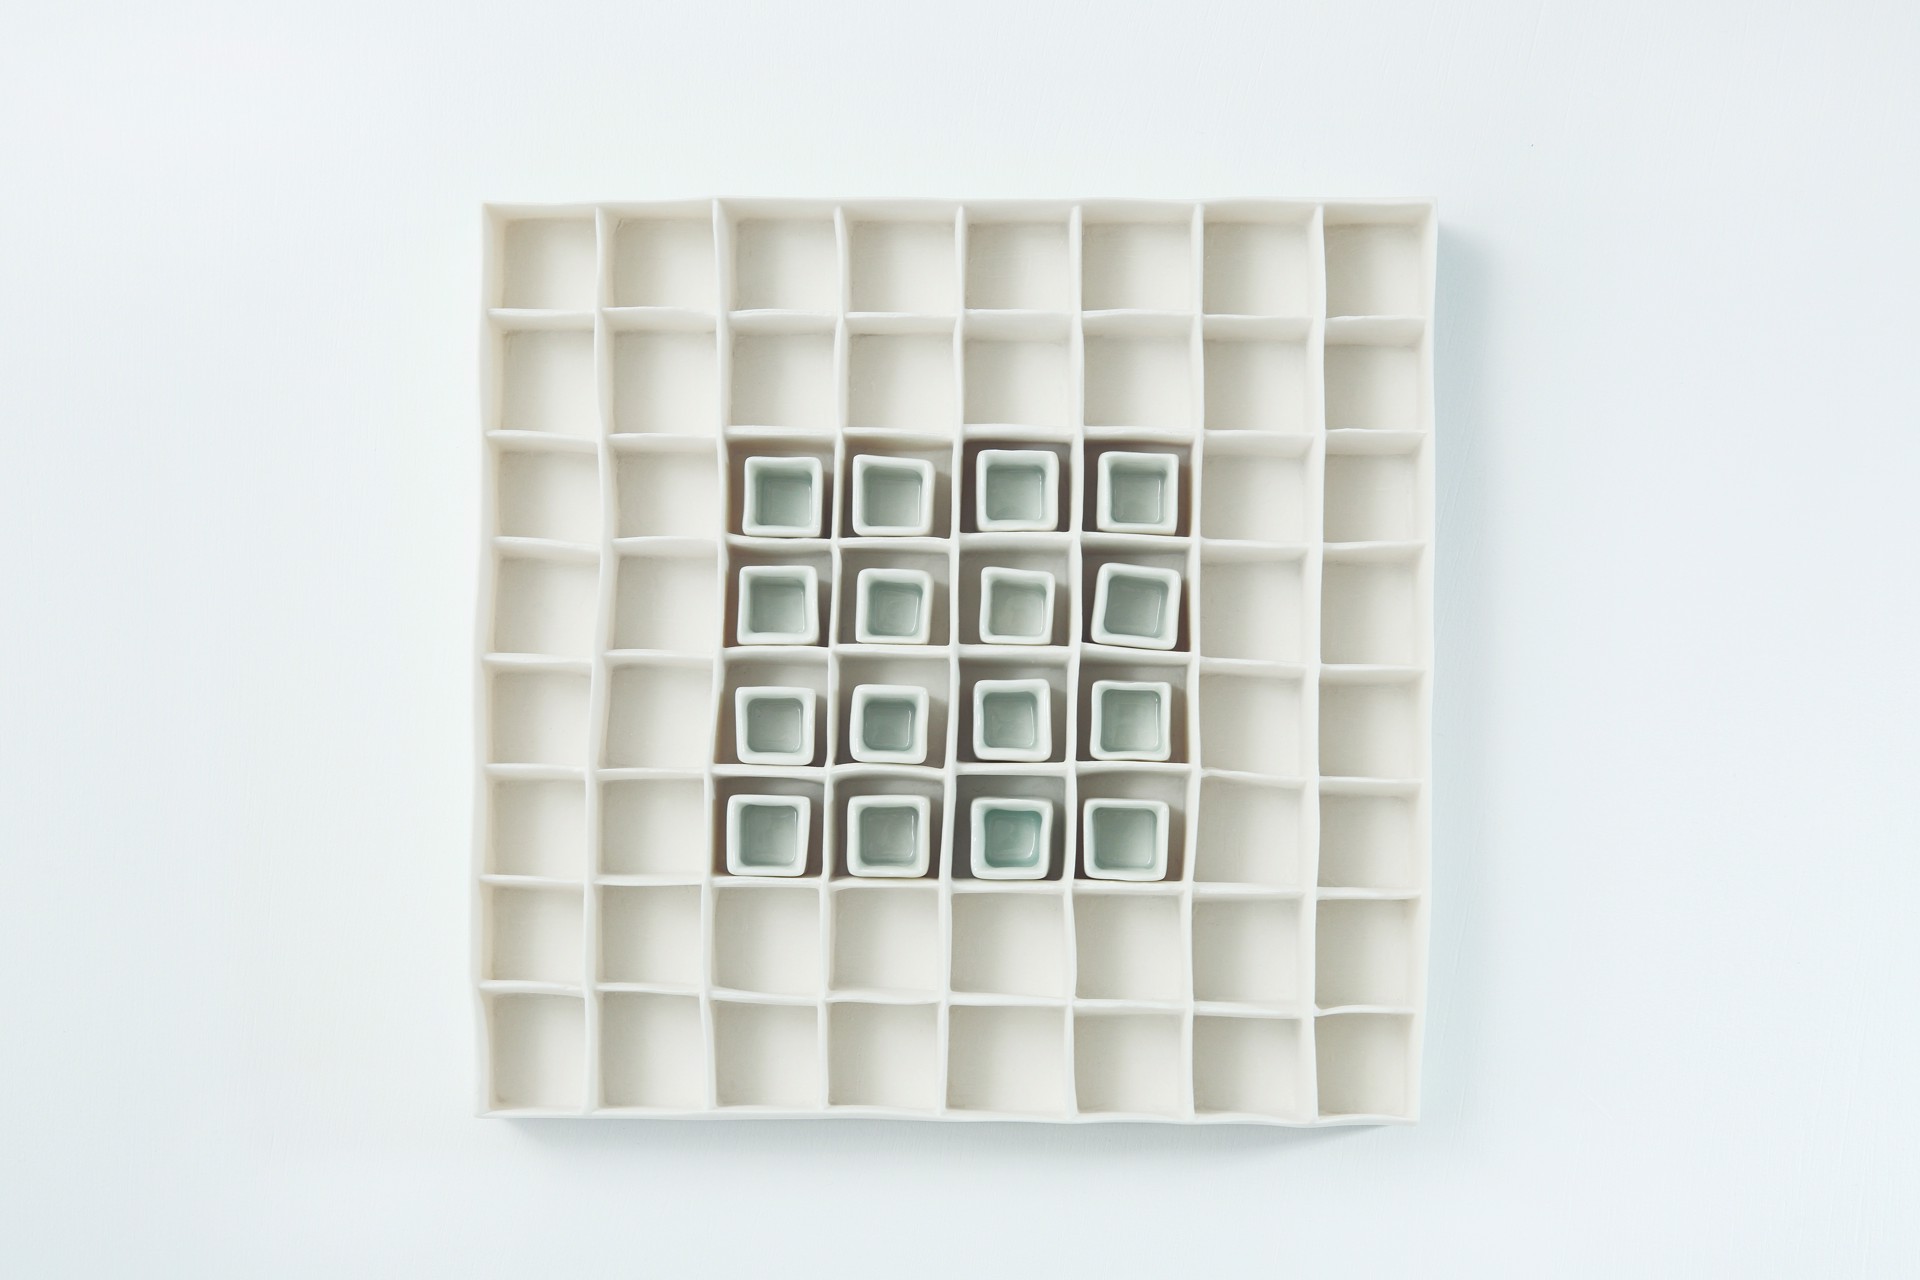 Porcelain Grid with Celadon Blue by Isobel Egan